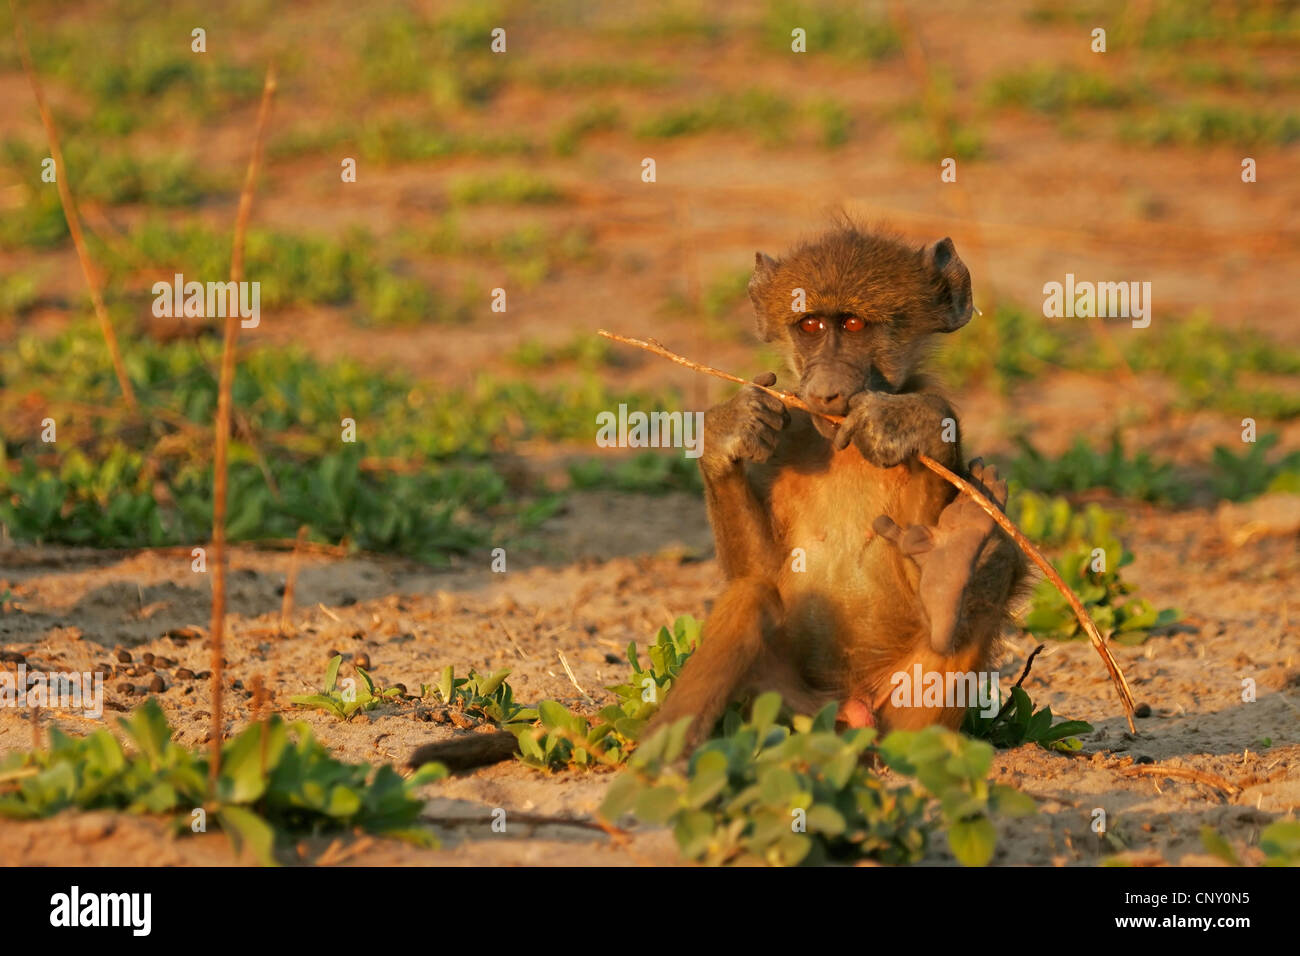 Babouin jaune, Savannah, babouin chacma baboon, commun babouin (Papio cynocephalus), juvénile assis sur la masse du sol de mâcher sur une tige, Botswana, Chobe National Park Banque D'Images